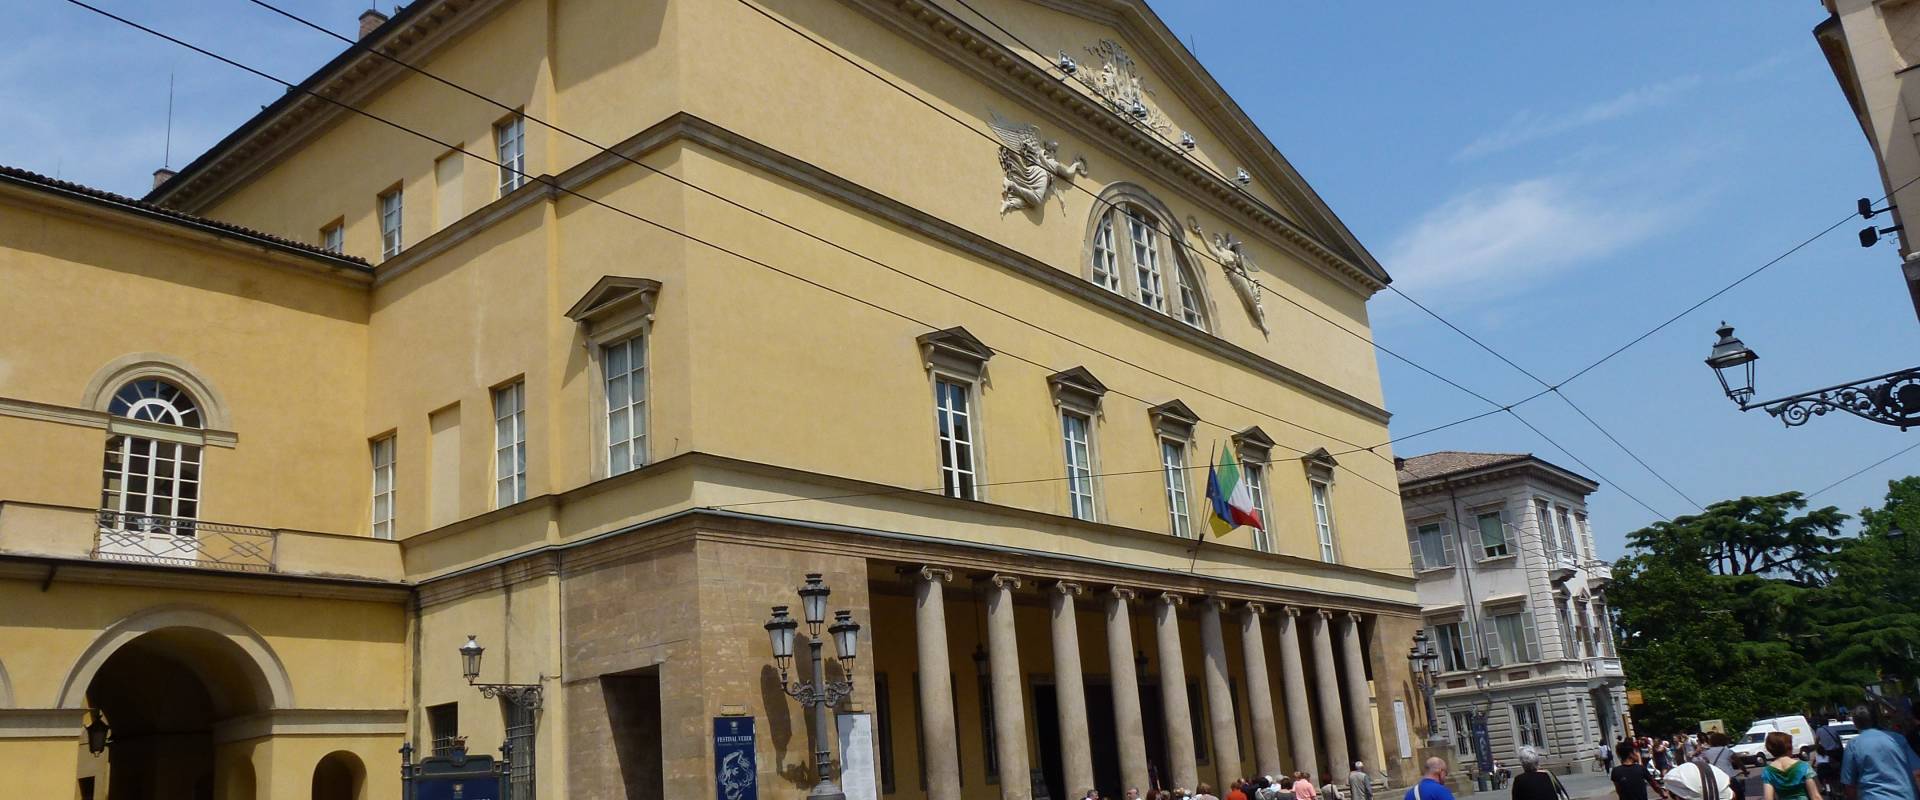 Teatro Regio Parma foto di Eliocommons